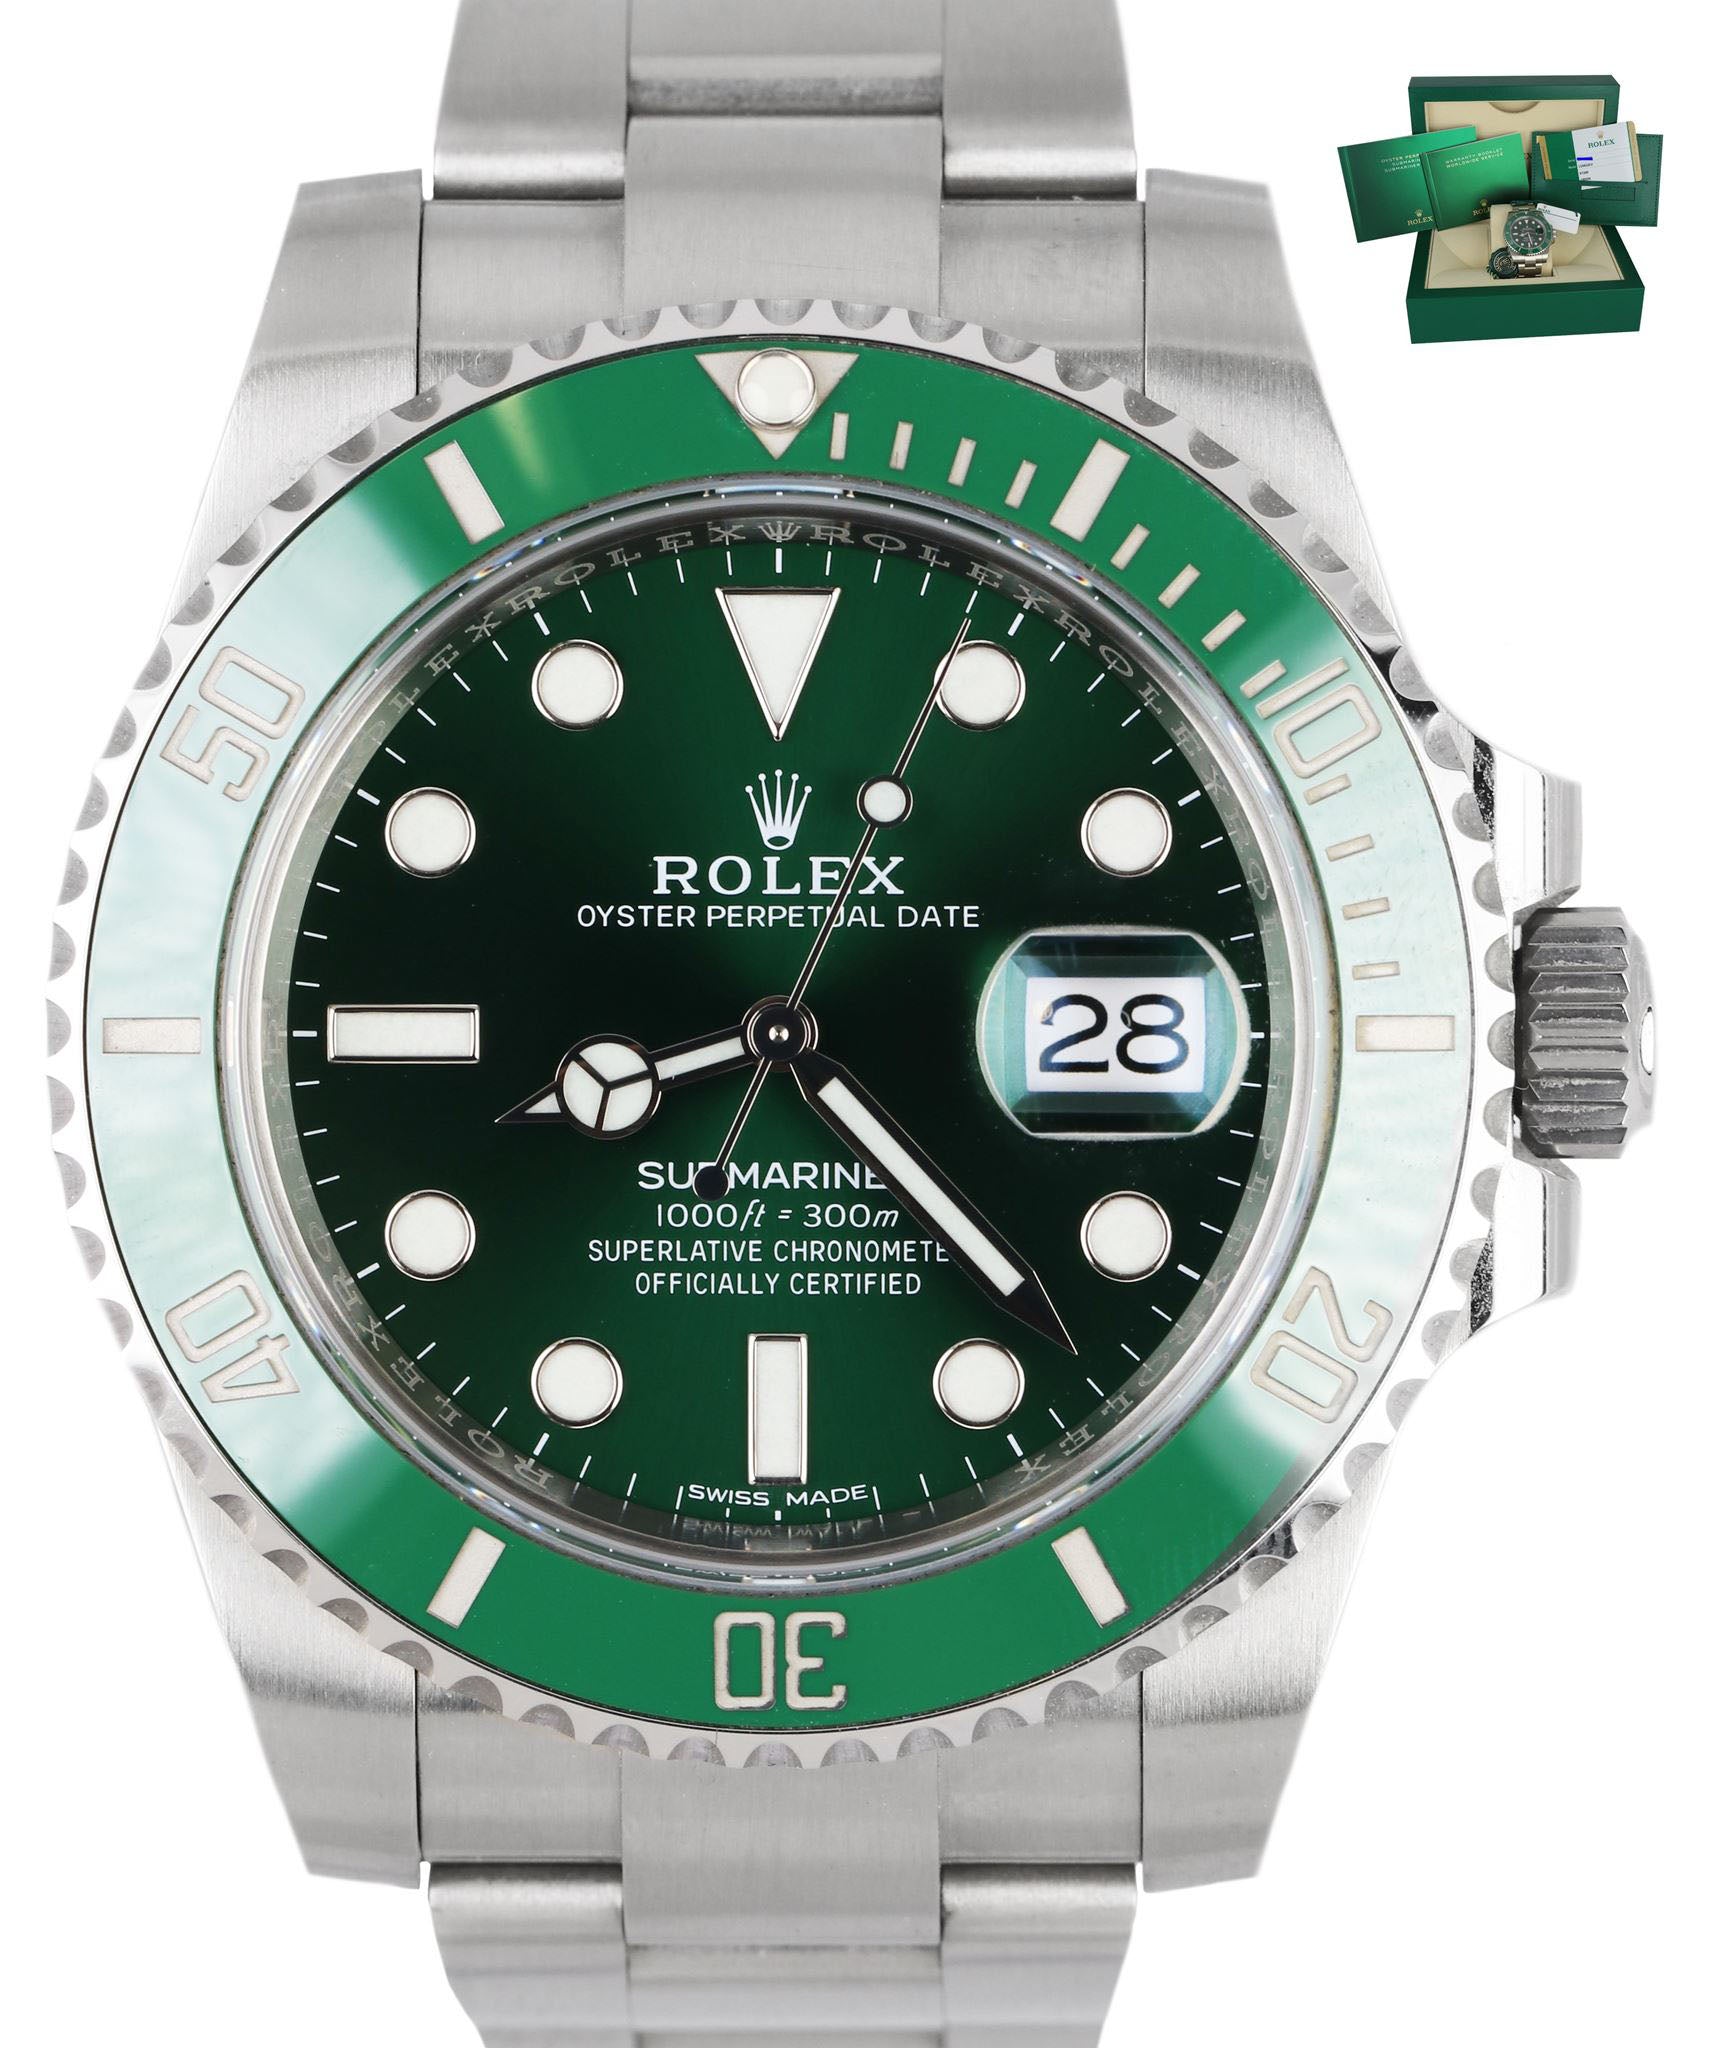 NEW UNWORN 2019 Rolex HULK Submariner Date 116610 LV Green Steel FULL SET Watch